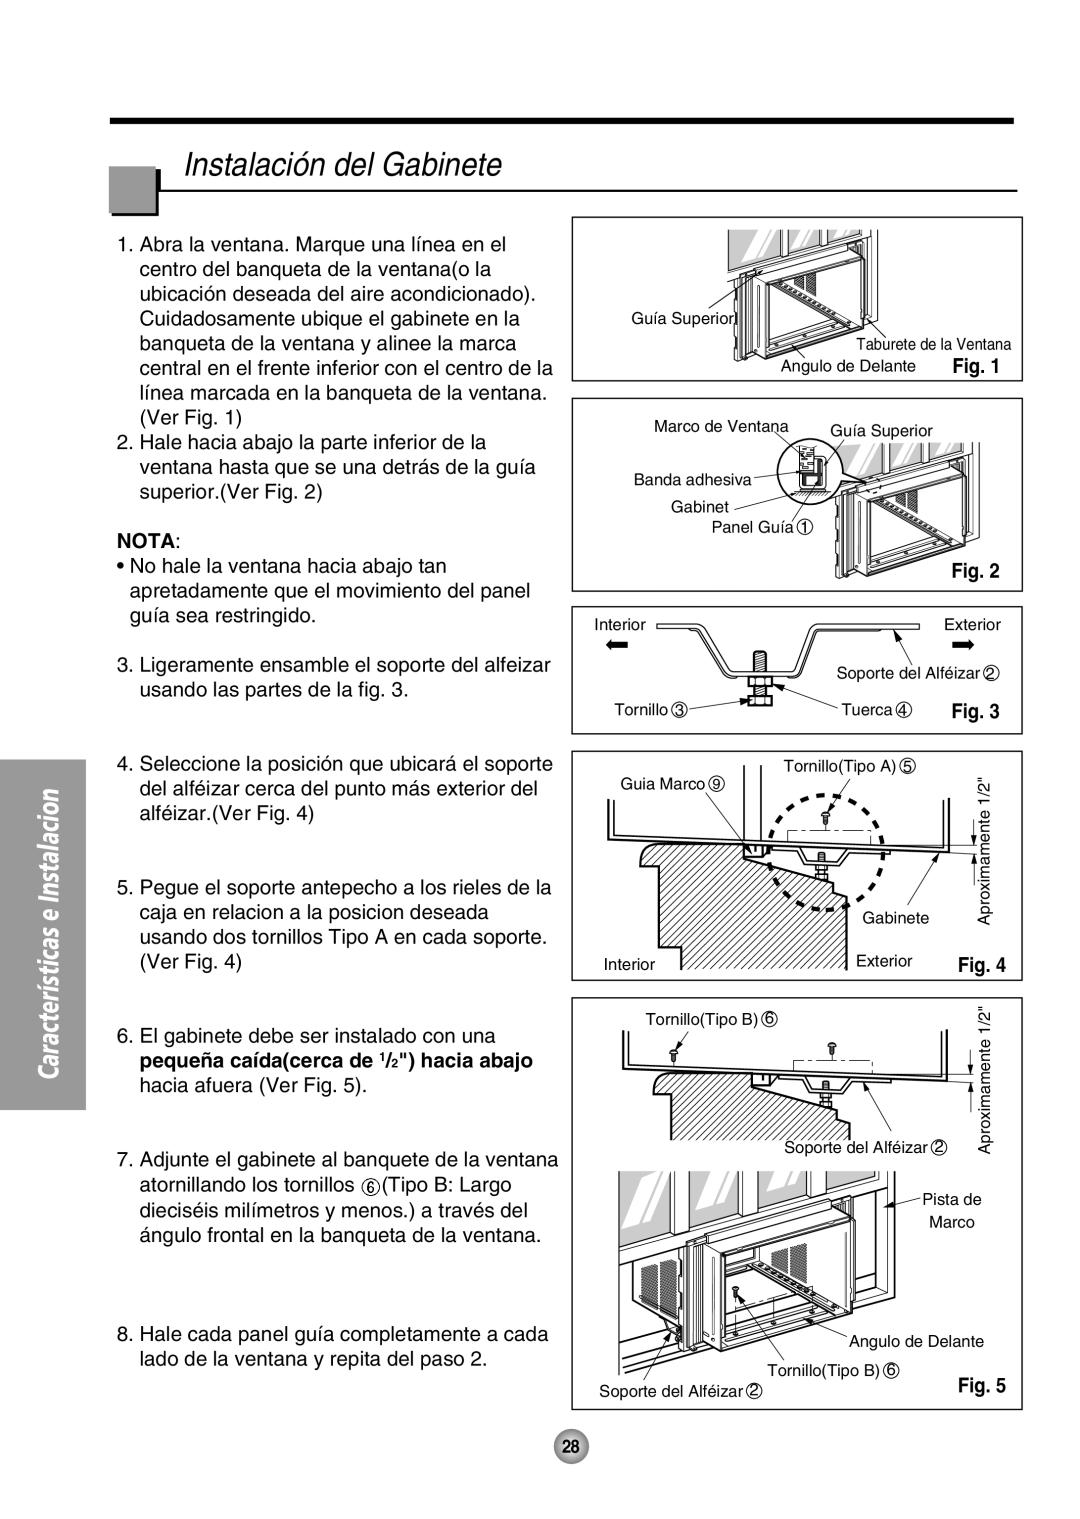 Panasonic CW-XC65HU Instalación del Gabinete, Nota, Características e Instalacion, pequeña caídacerca de 1/2 hacia abajo 